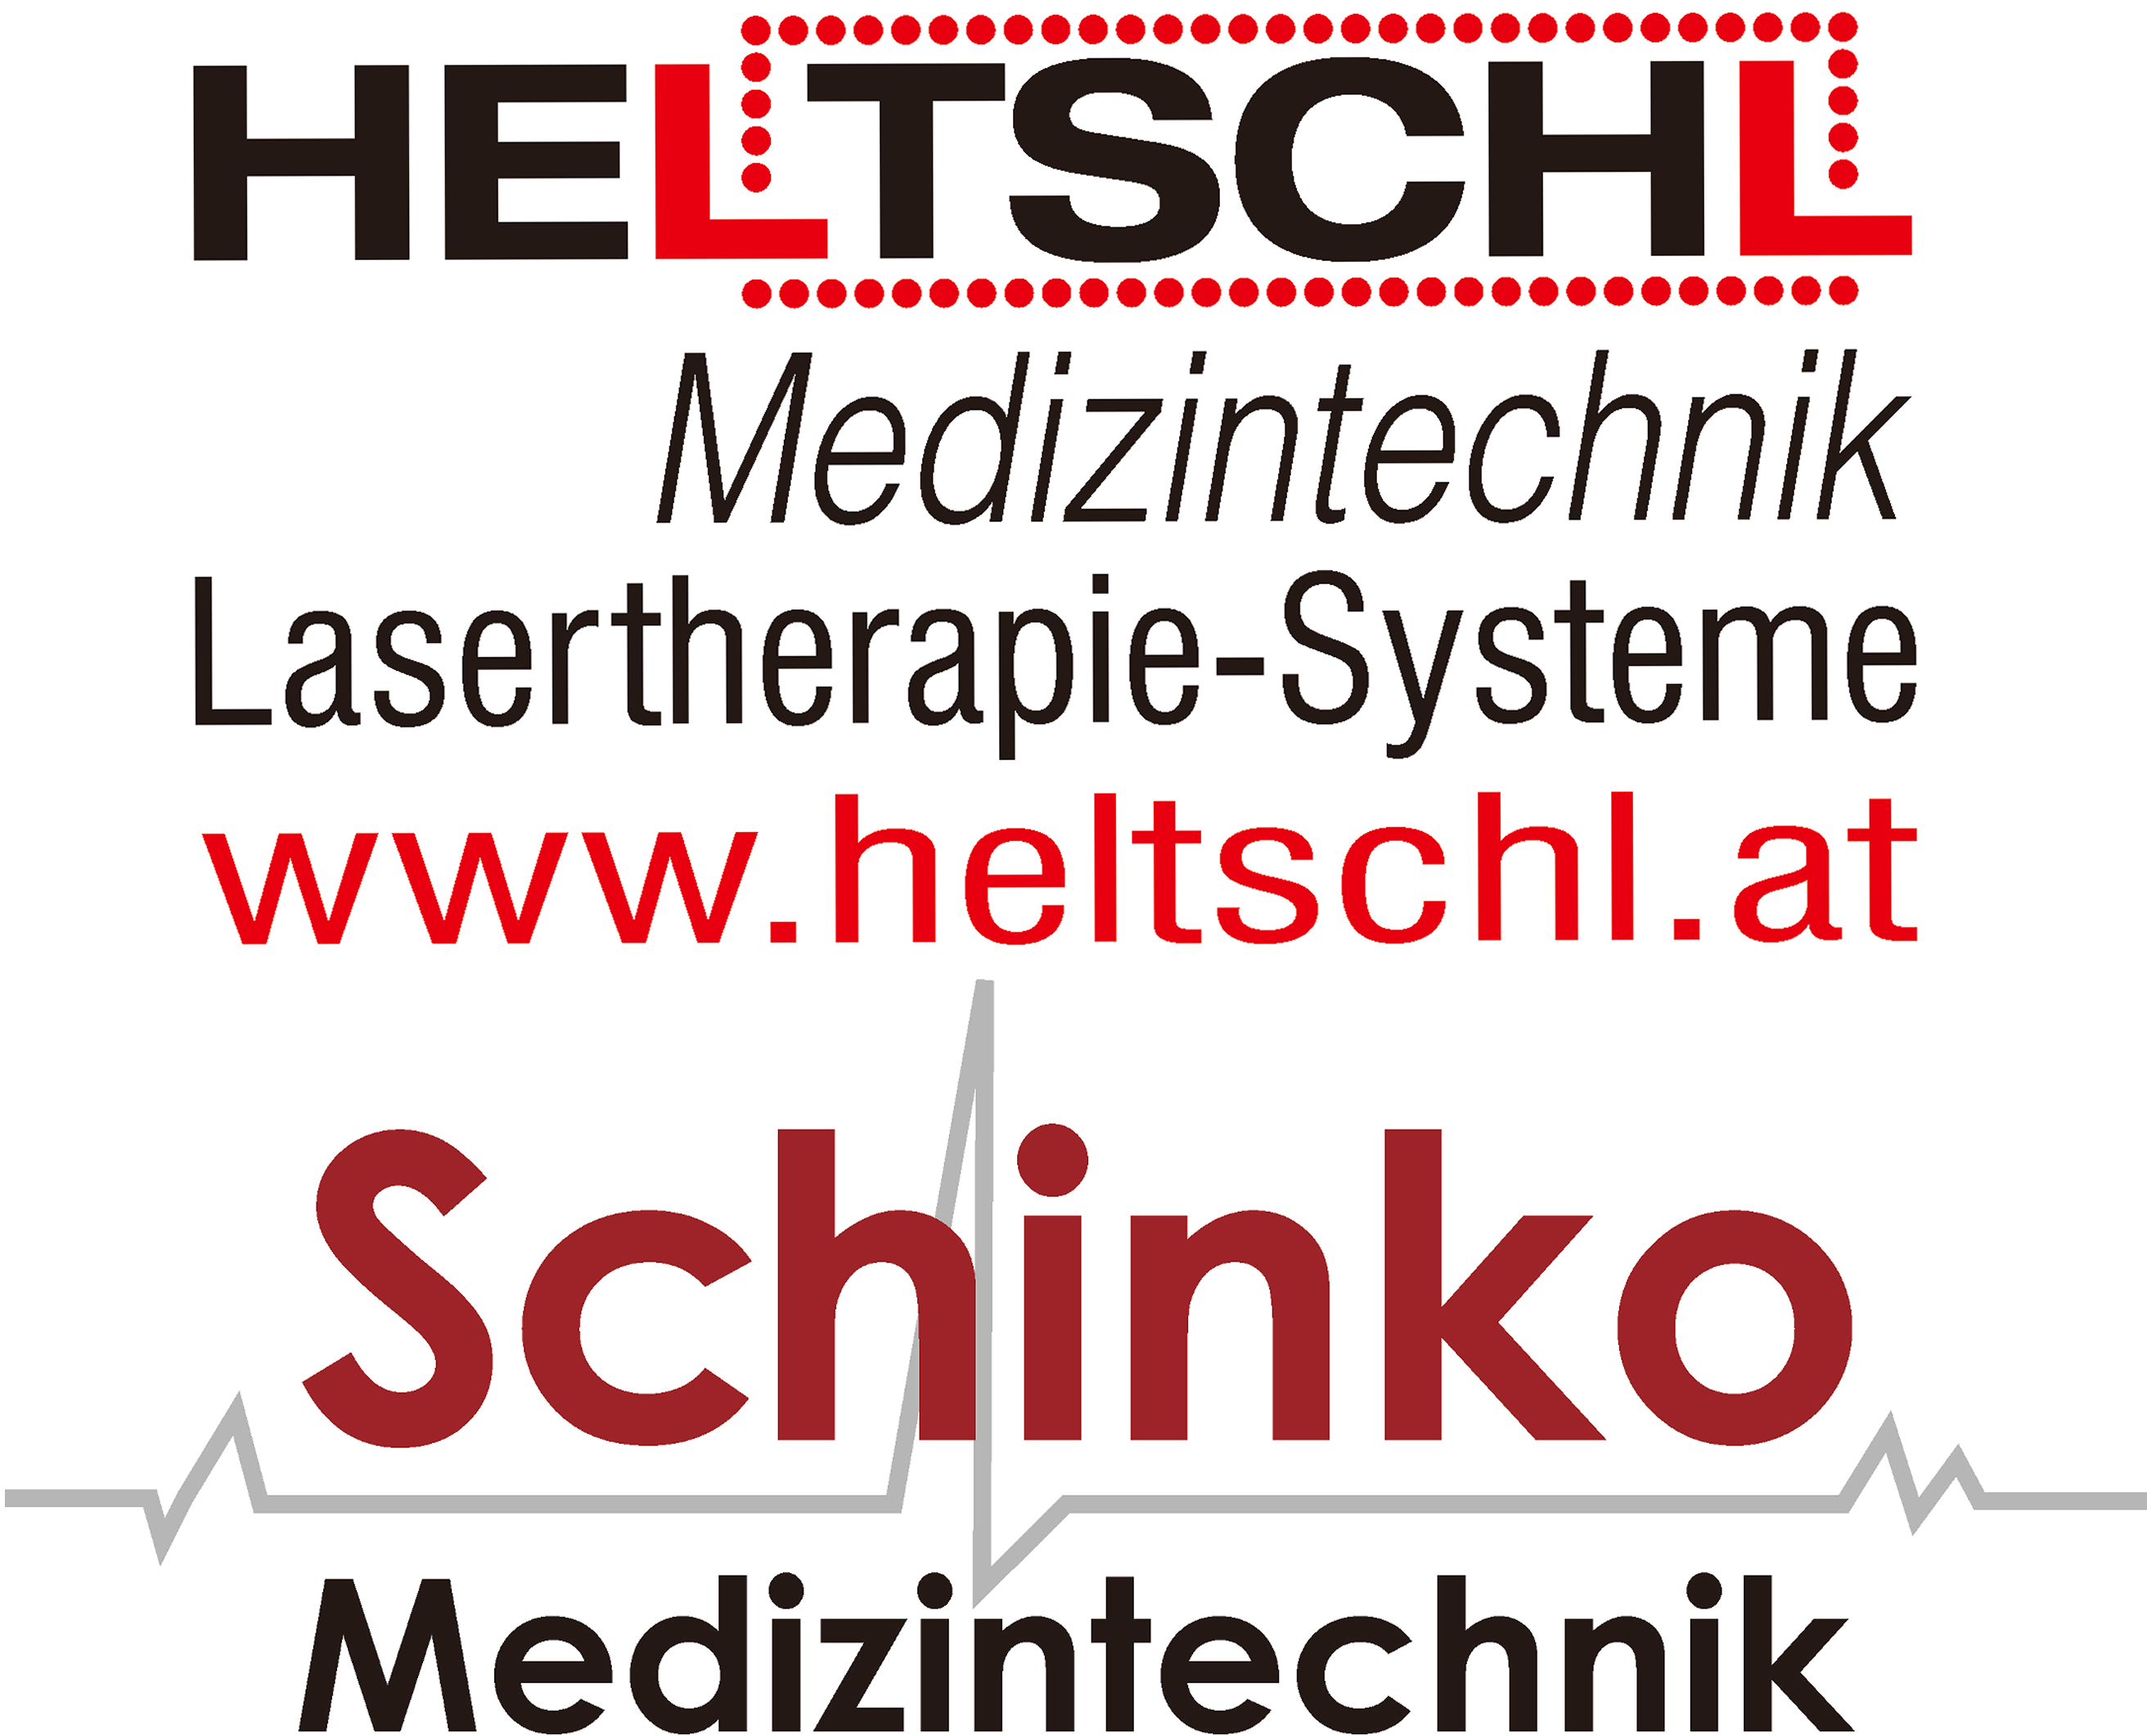 HELTSCHL GmbH & SCHINKO Medizintechnik, Gallspach